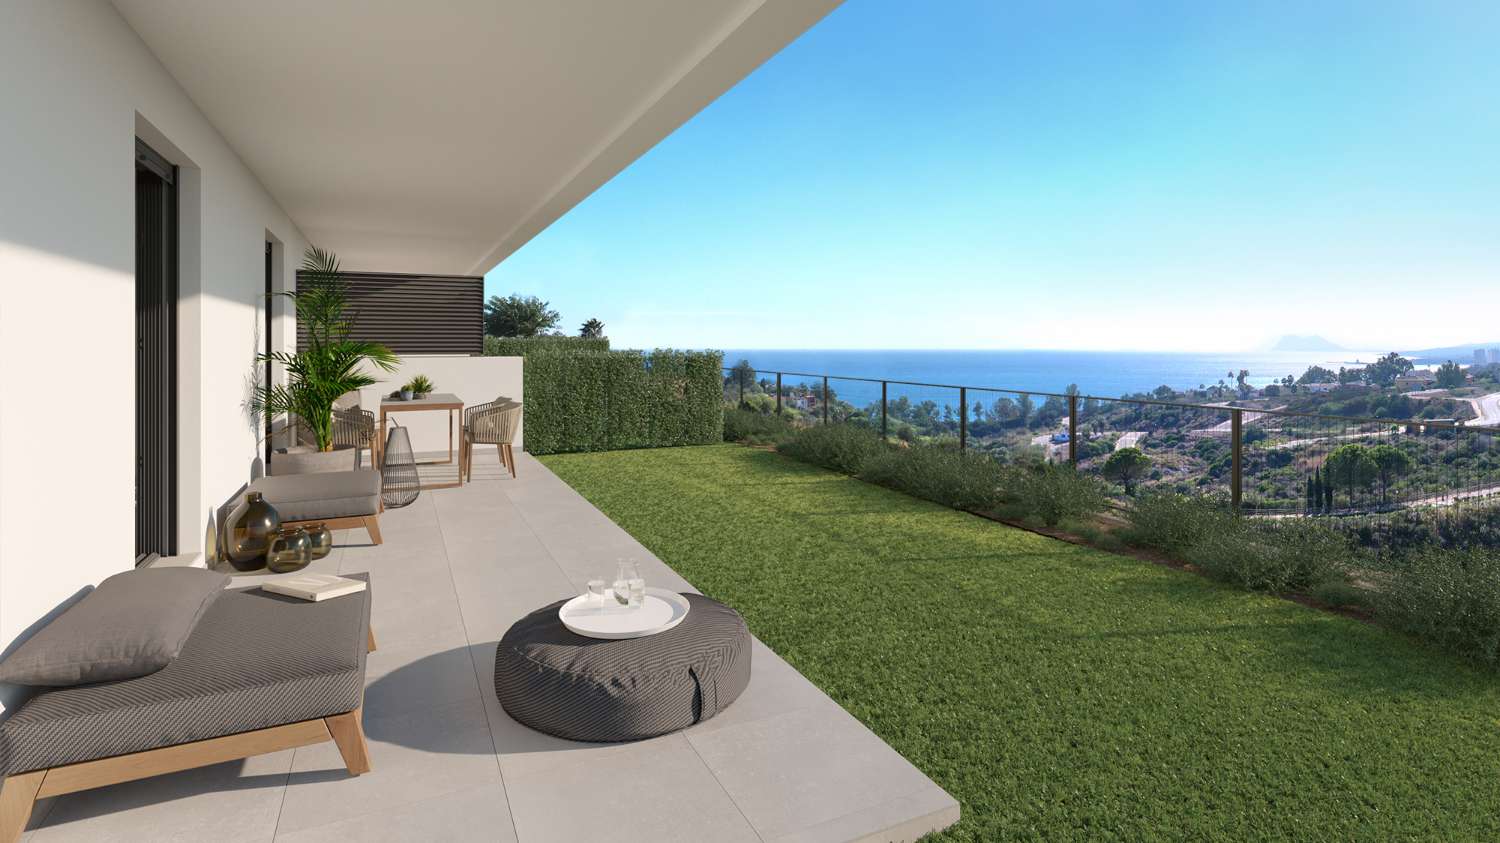 Maison avec vue sur la mer à vendre - Costa del Sol